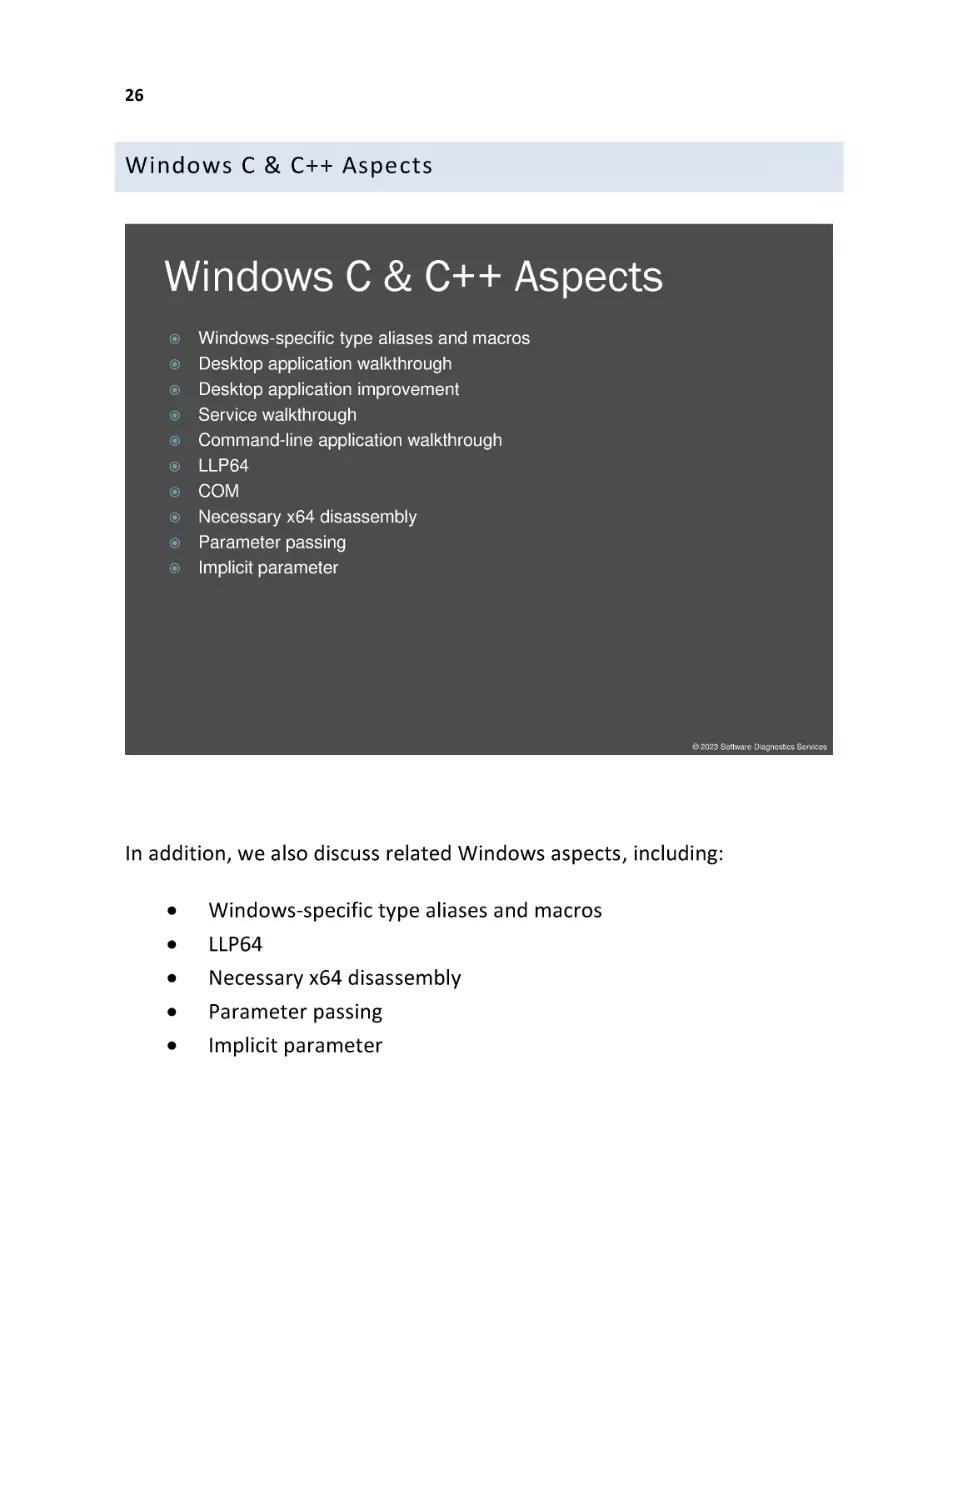 Windows C & C++ Aspects